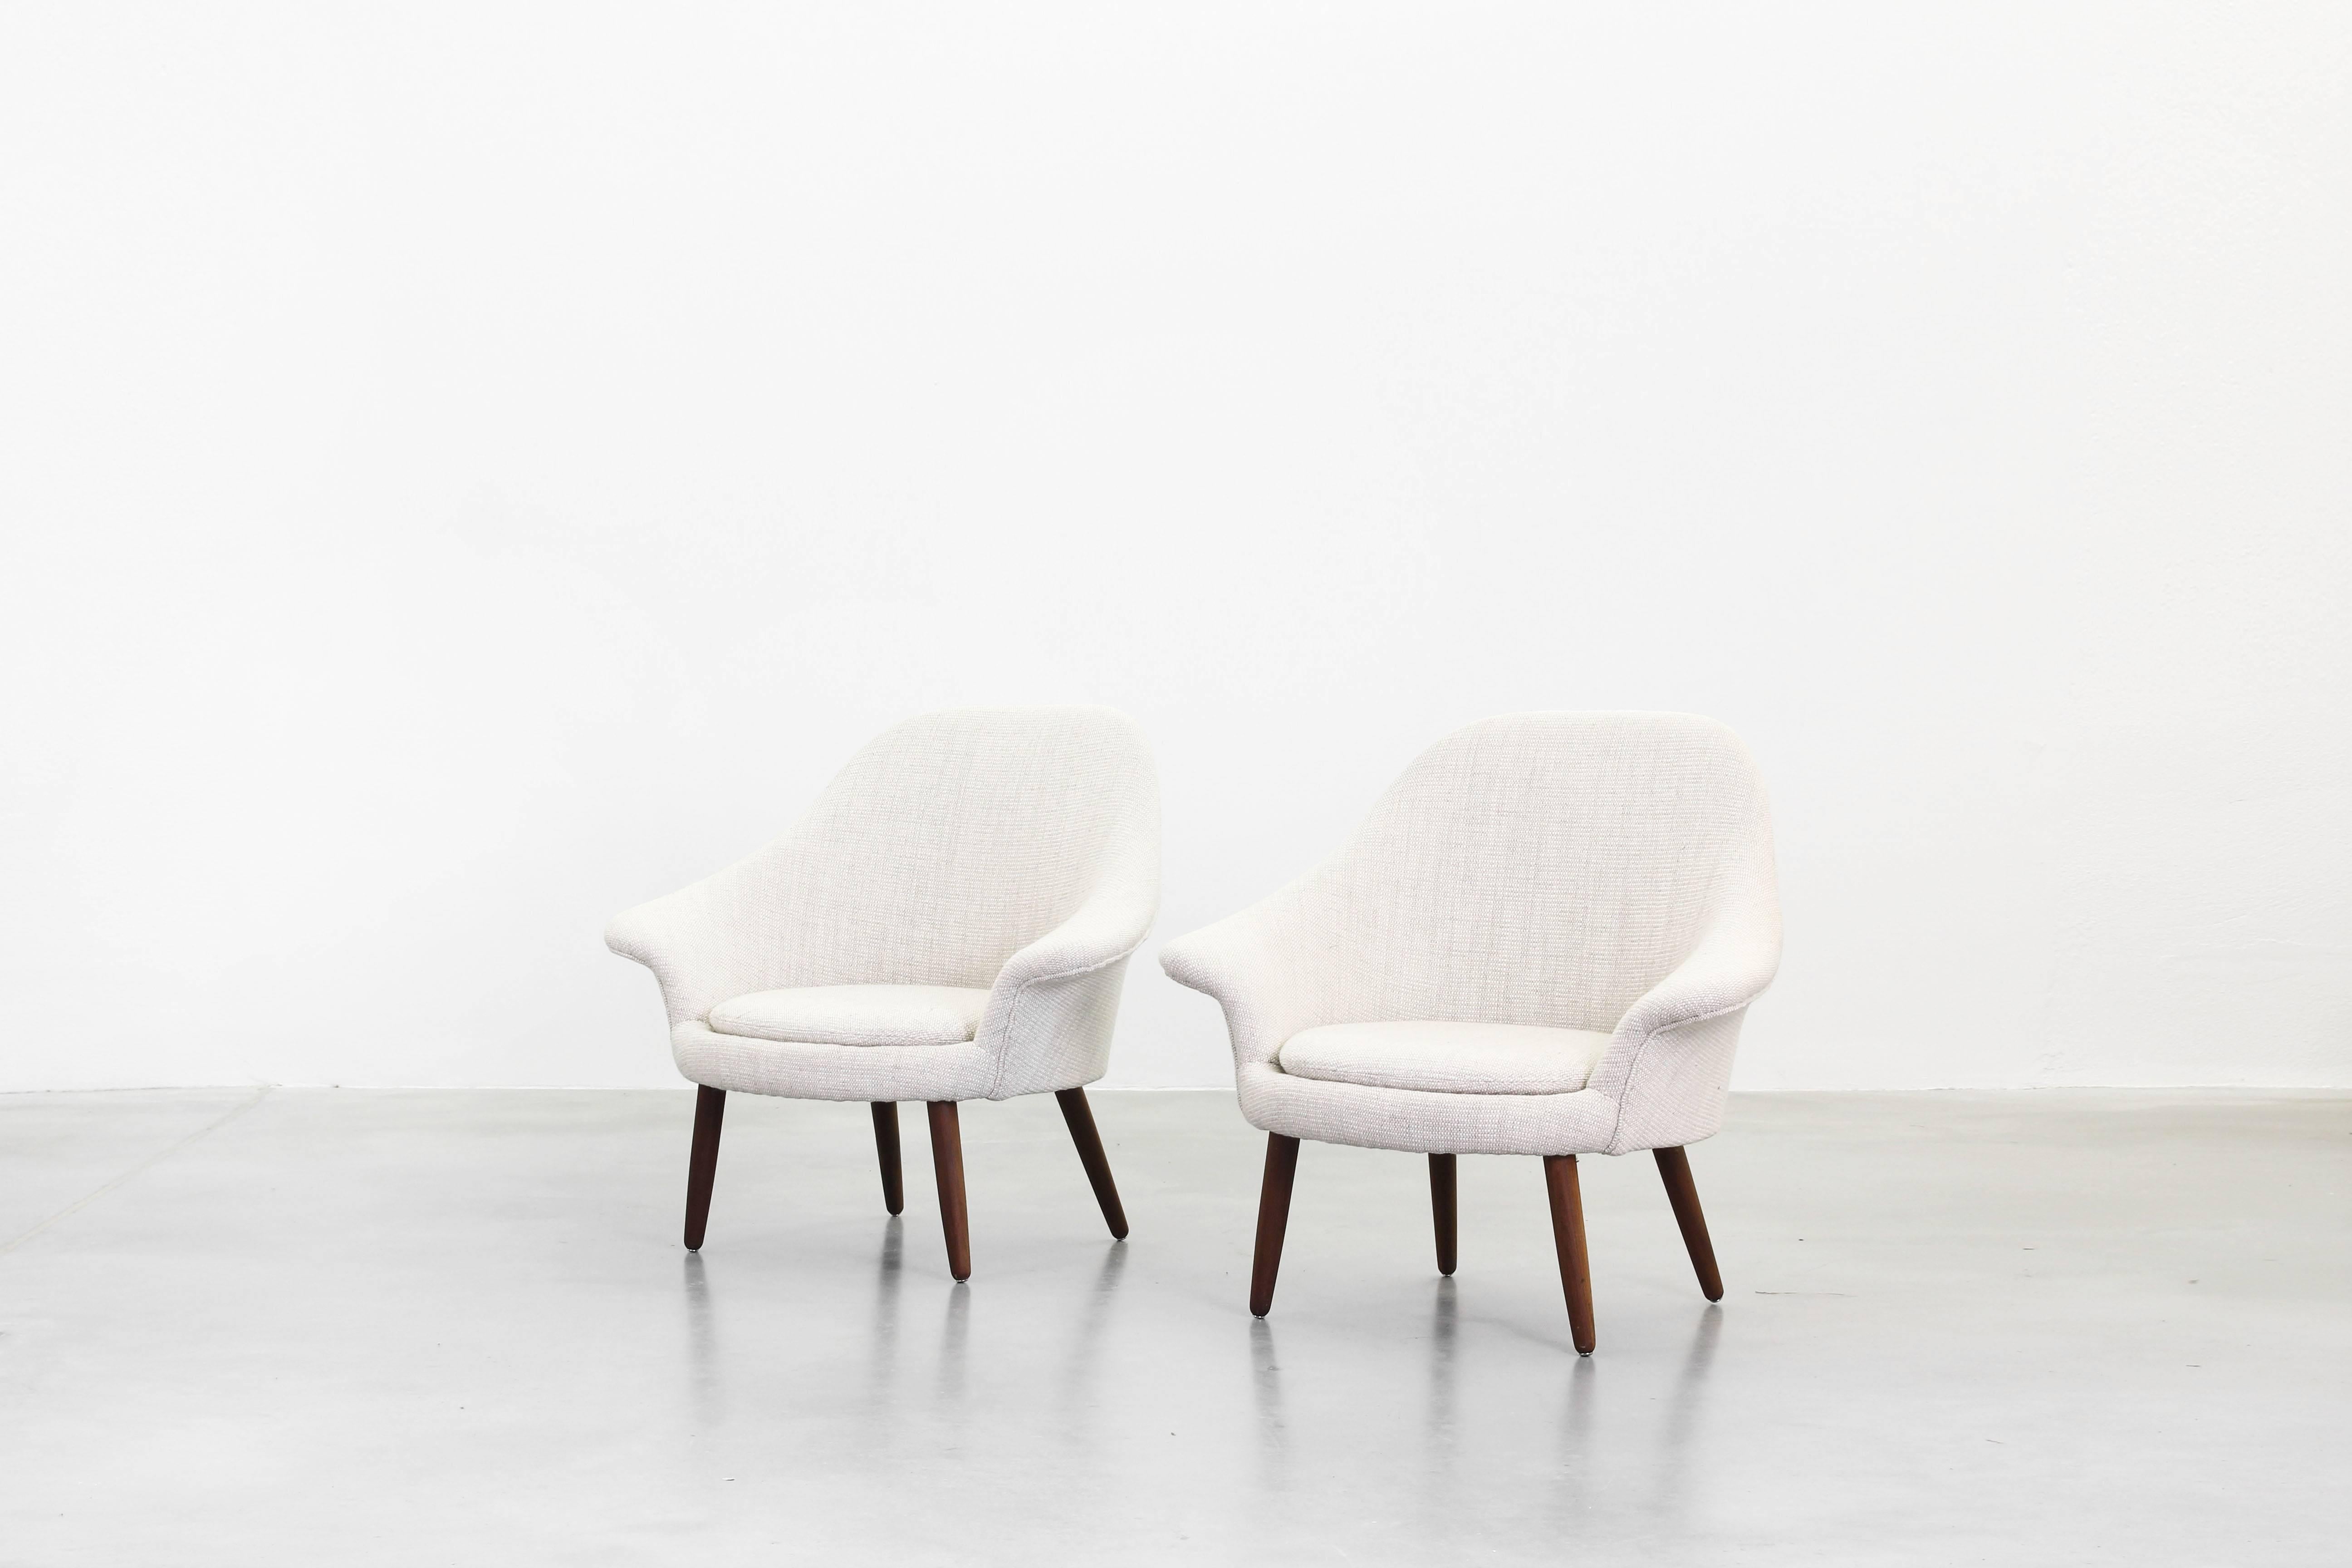 20th Century Pair of Danish Lounge Chairs in the Style of Hans Wegner Hans Olsen, Finn Juhl